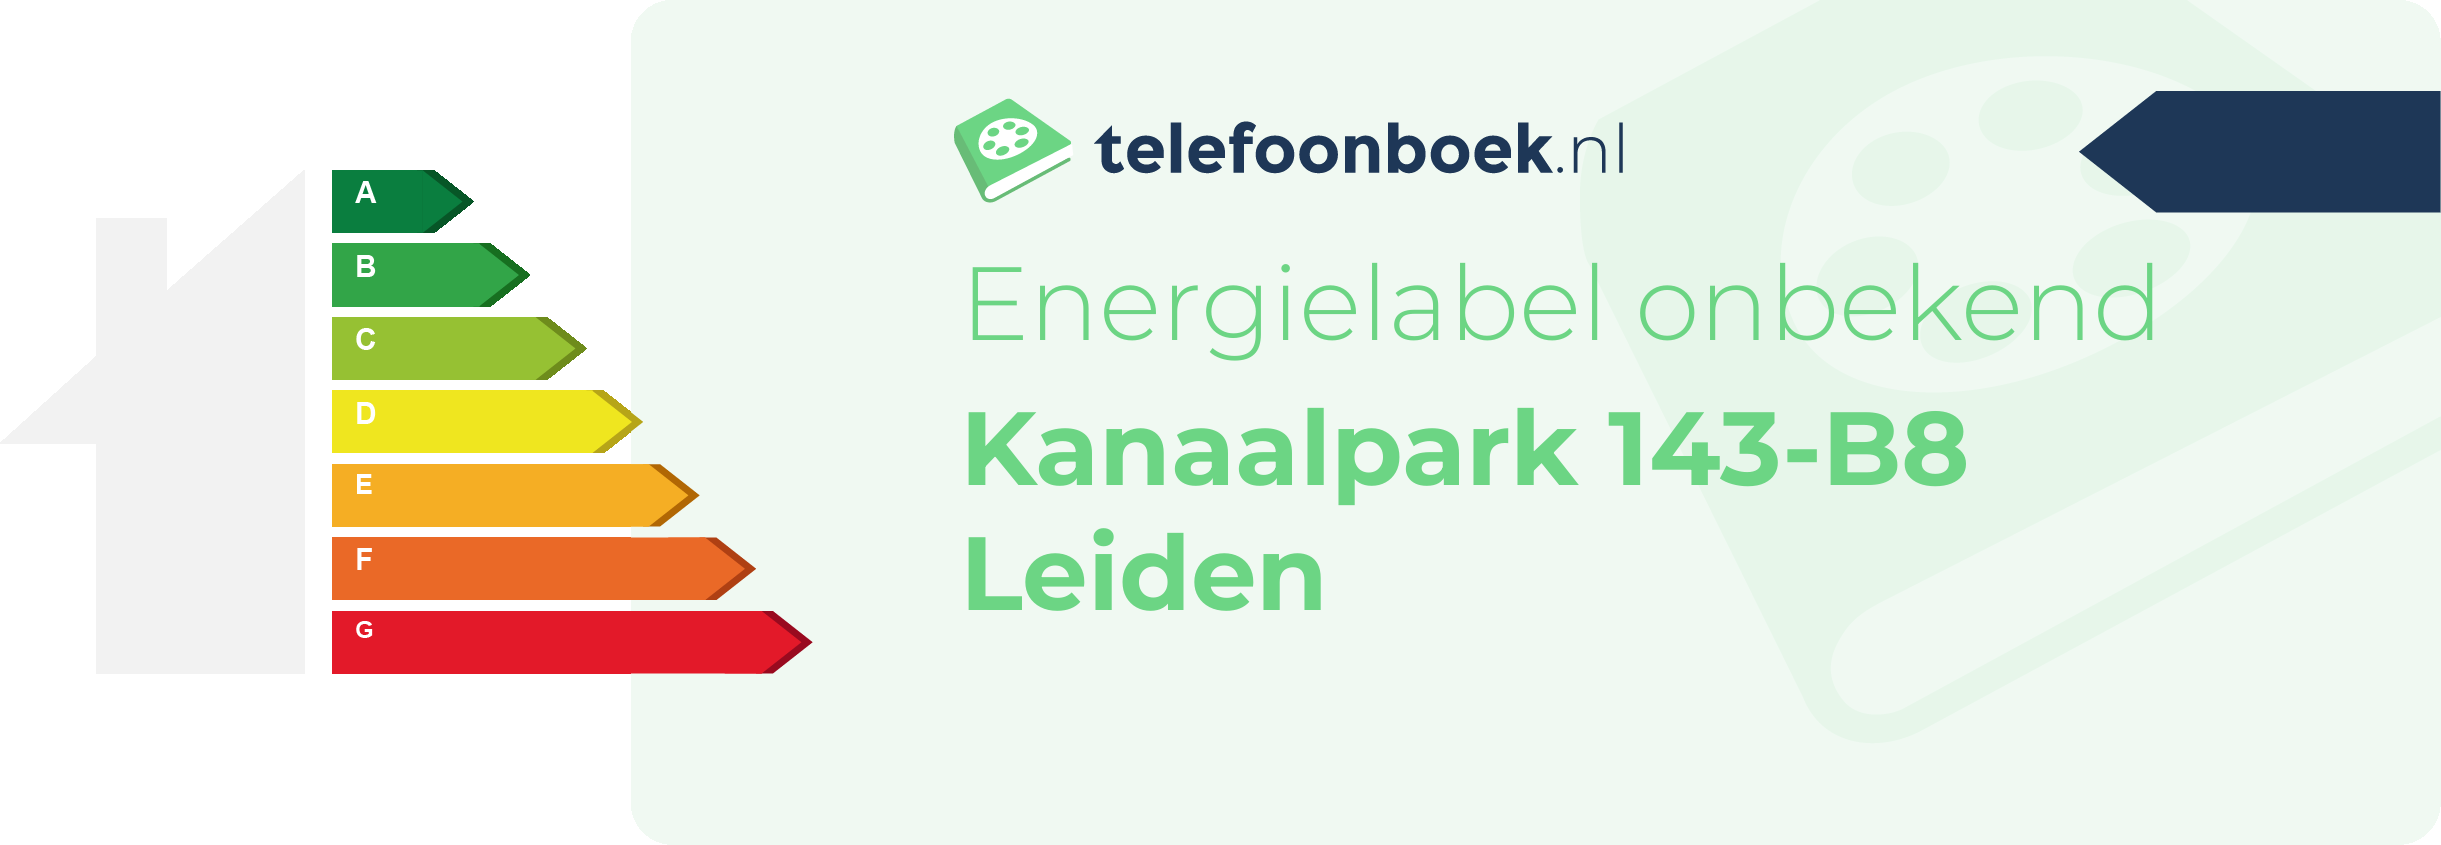 Energielabel Kanaalpark 143-B8 Leiden